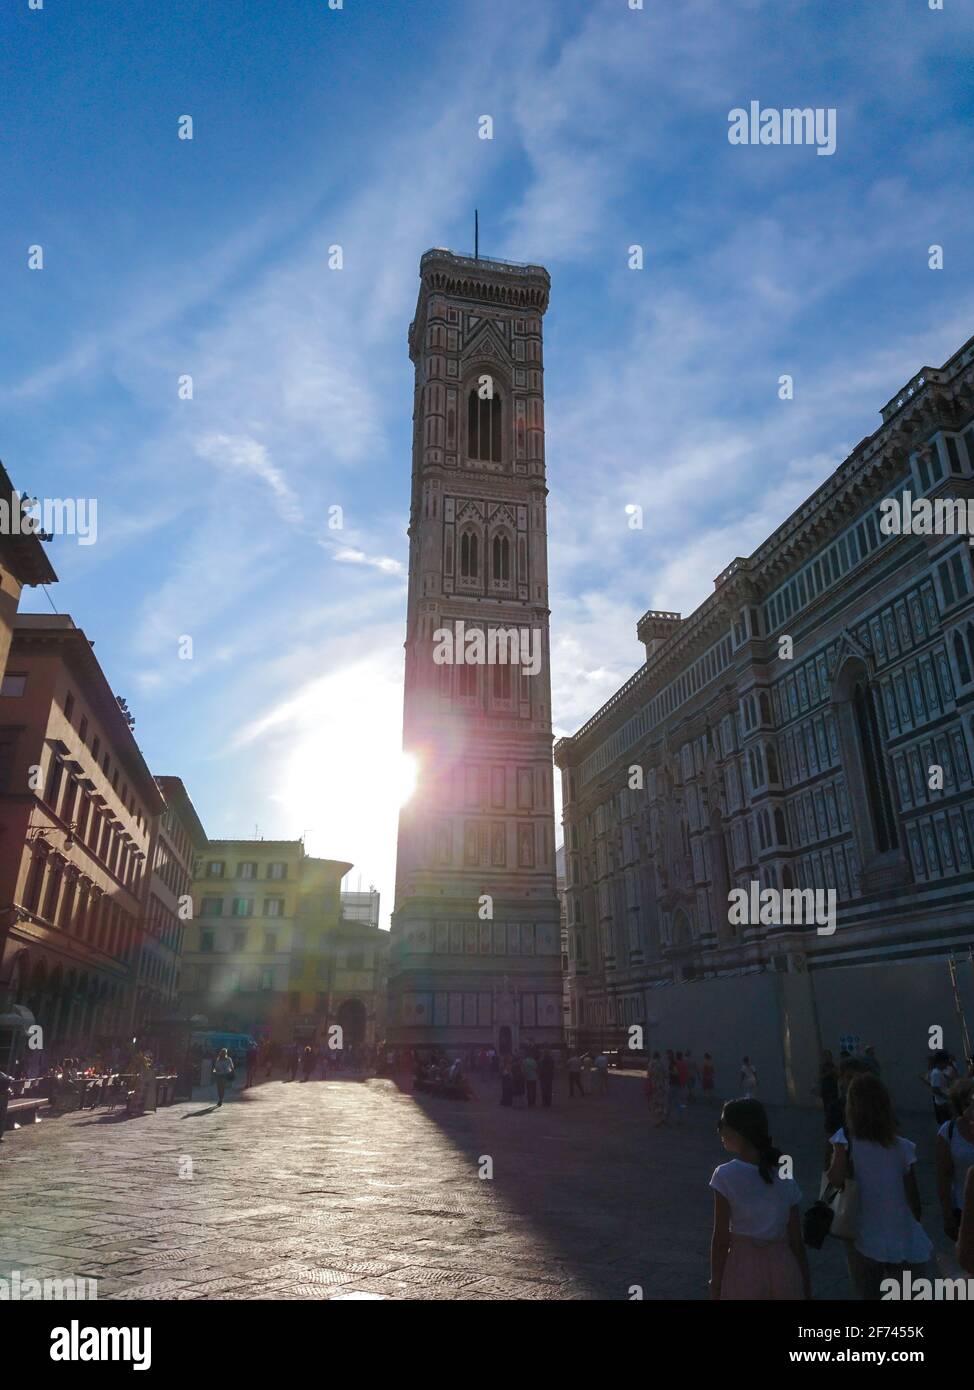 Firenze, Italia - 12 agosto 2019: Il campanile di Giotto e la Cattedrale di Santa Maria del Fiore si affacciano sulla strada con il sole luminoso. Facciata in marmo colorato con bl Foto Stock